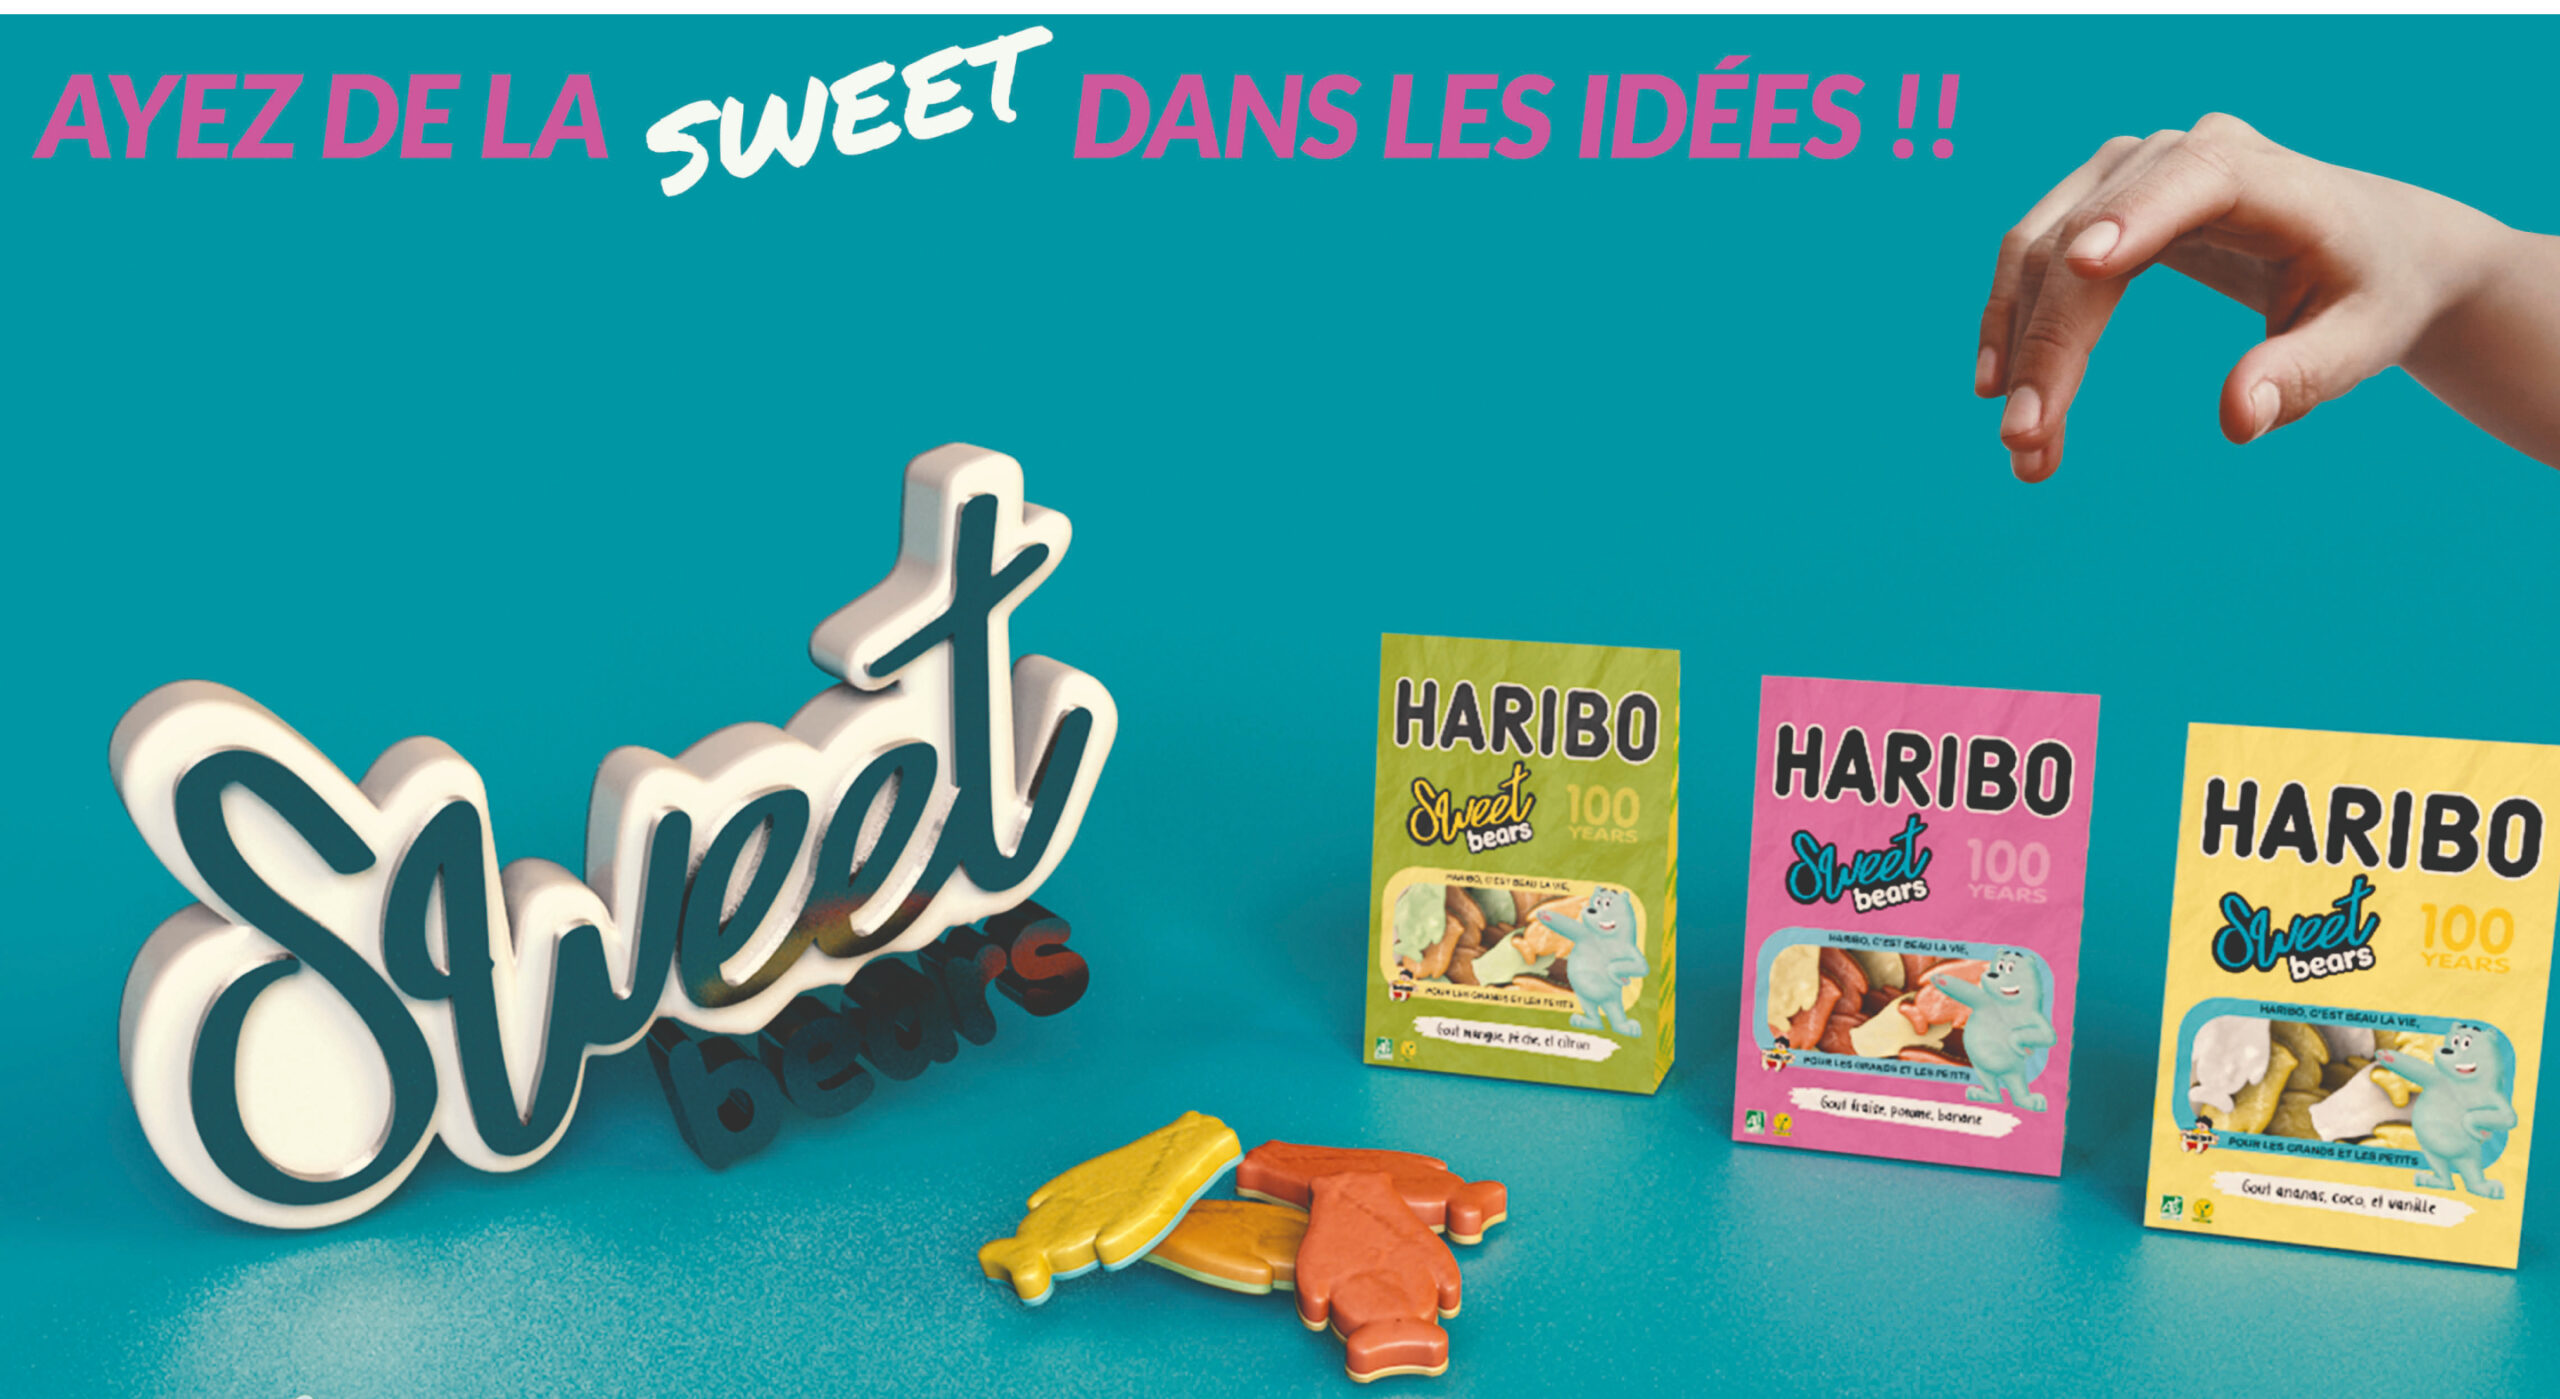 Haribo sweetbear publicité